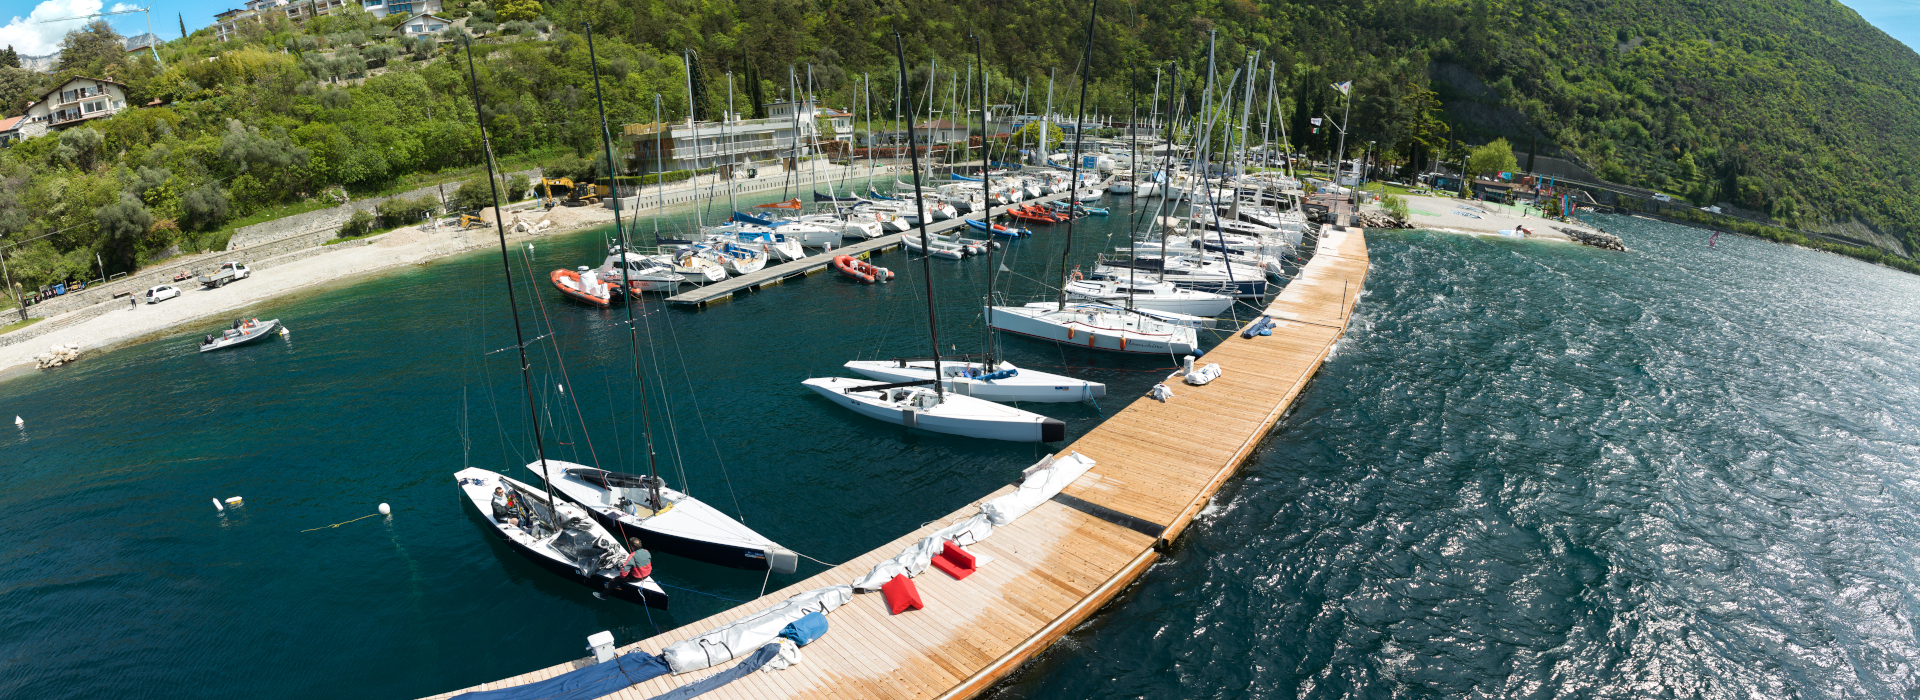 Corsi di Vela, Patenti Nautiche e Noleggio Barche sul Lago di Garda | Circolo Vela Torbole